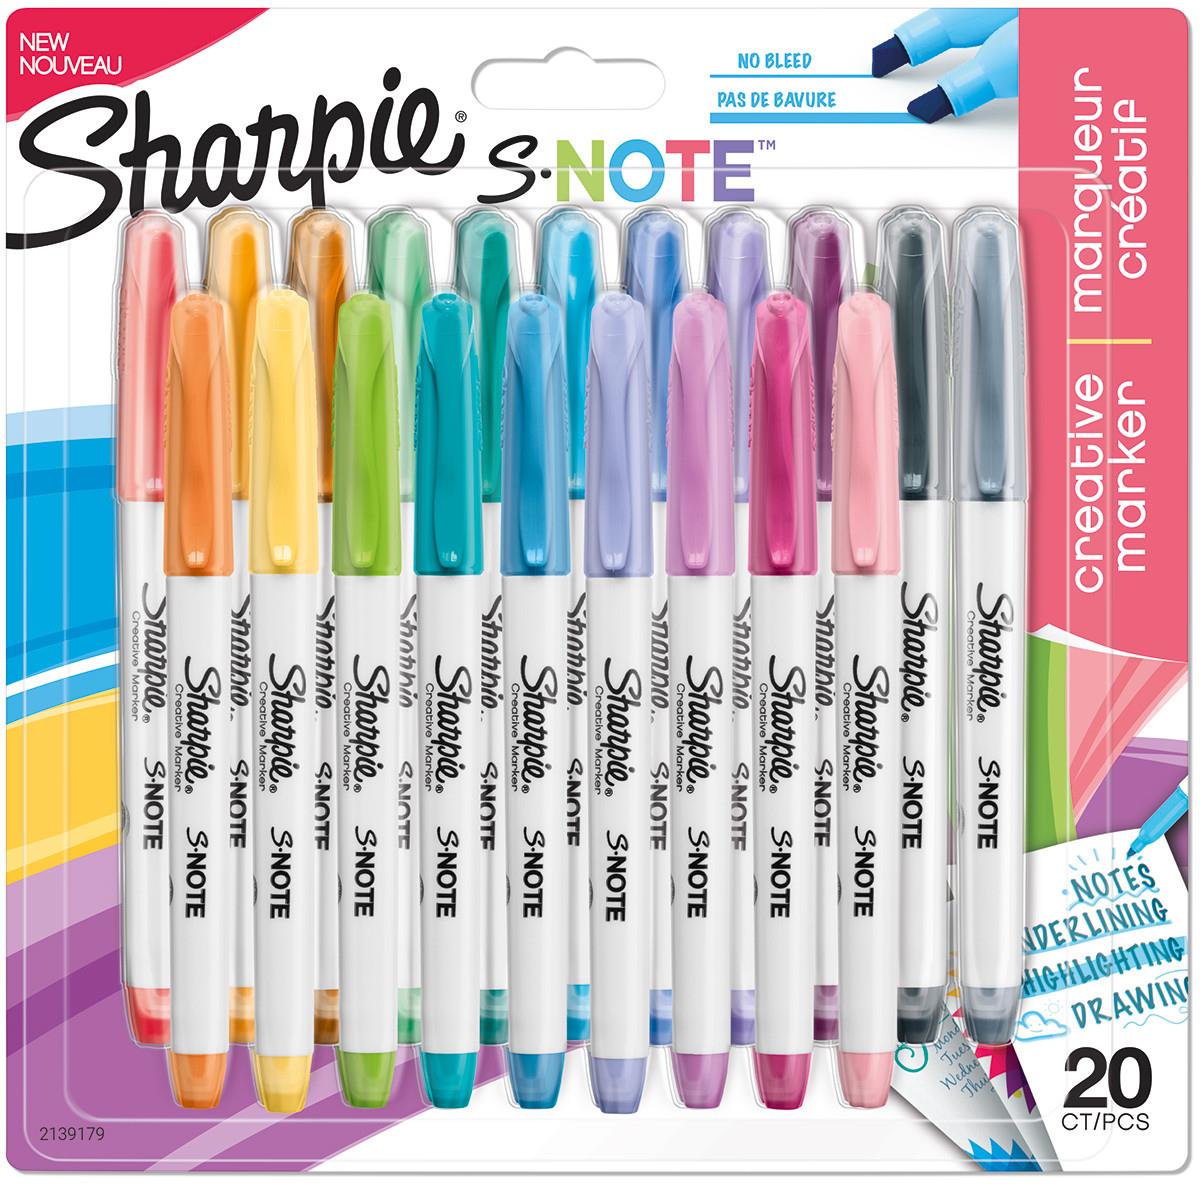 Sharpie Creative Marker S-Note